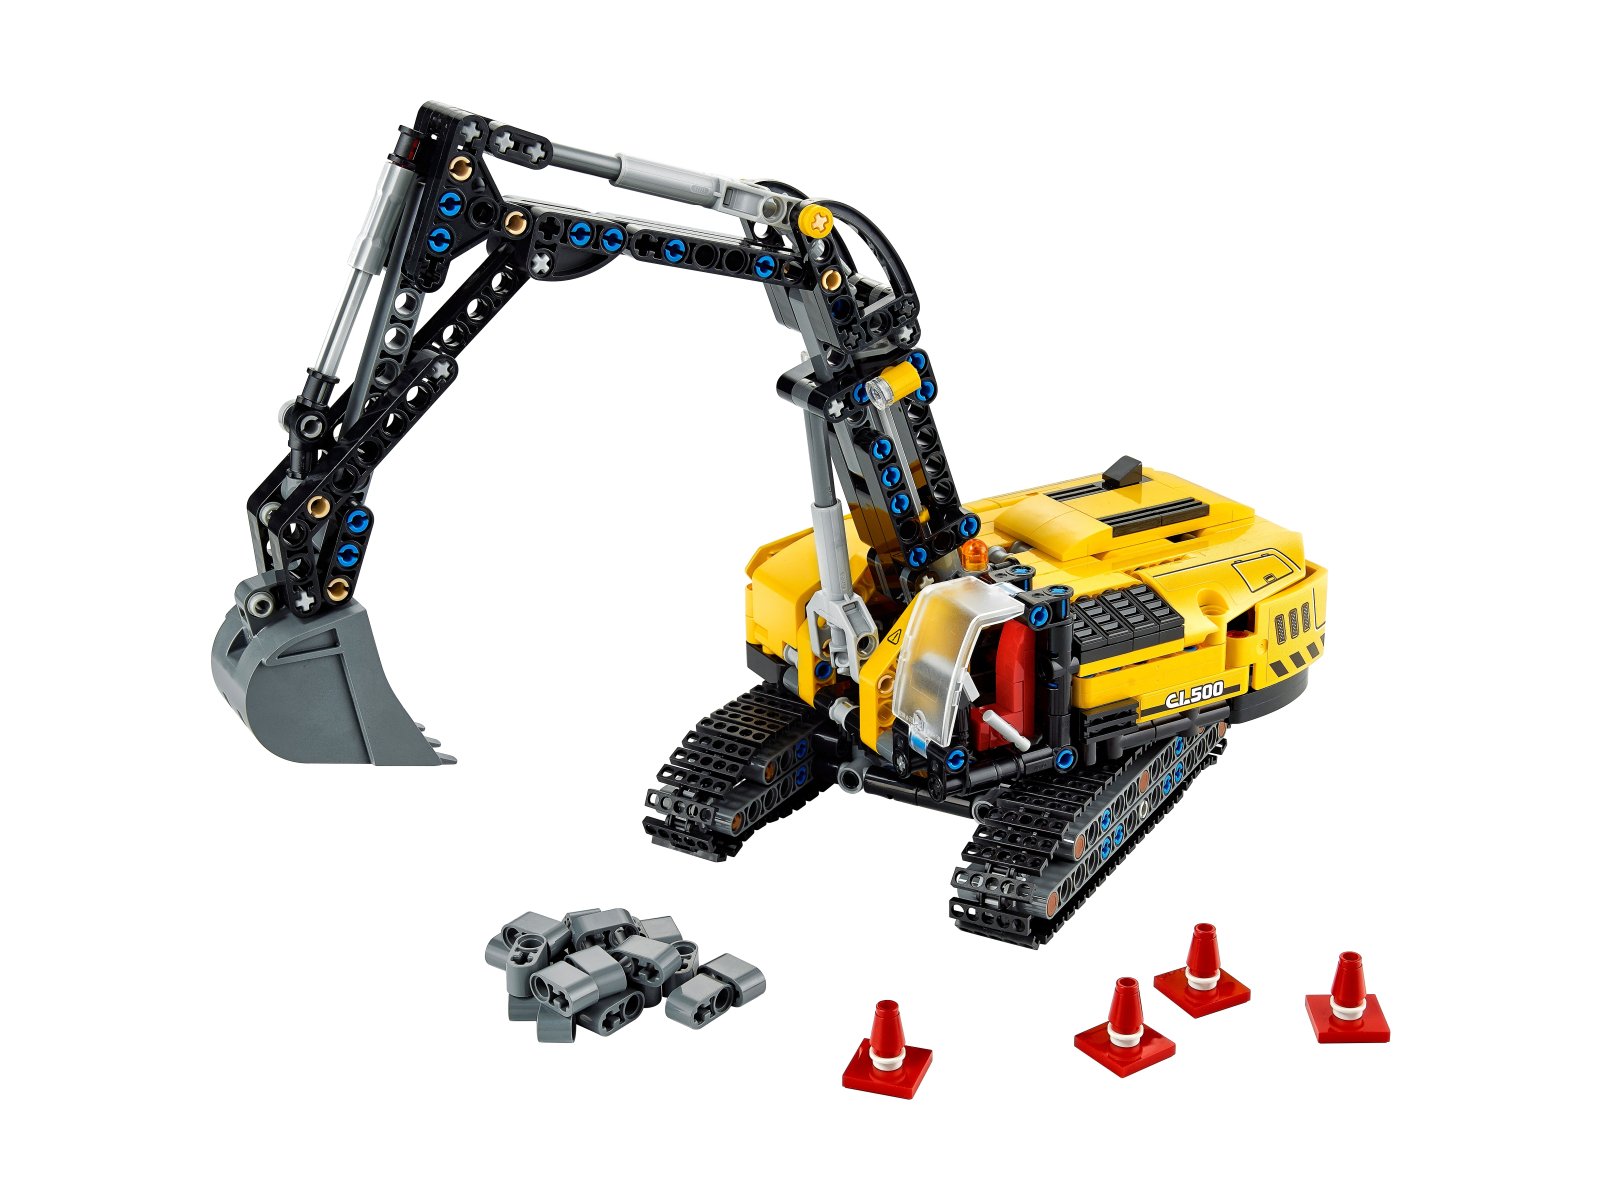 LEGO Technic 42121 Wytrzymała koparka